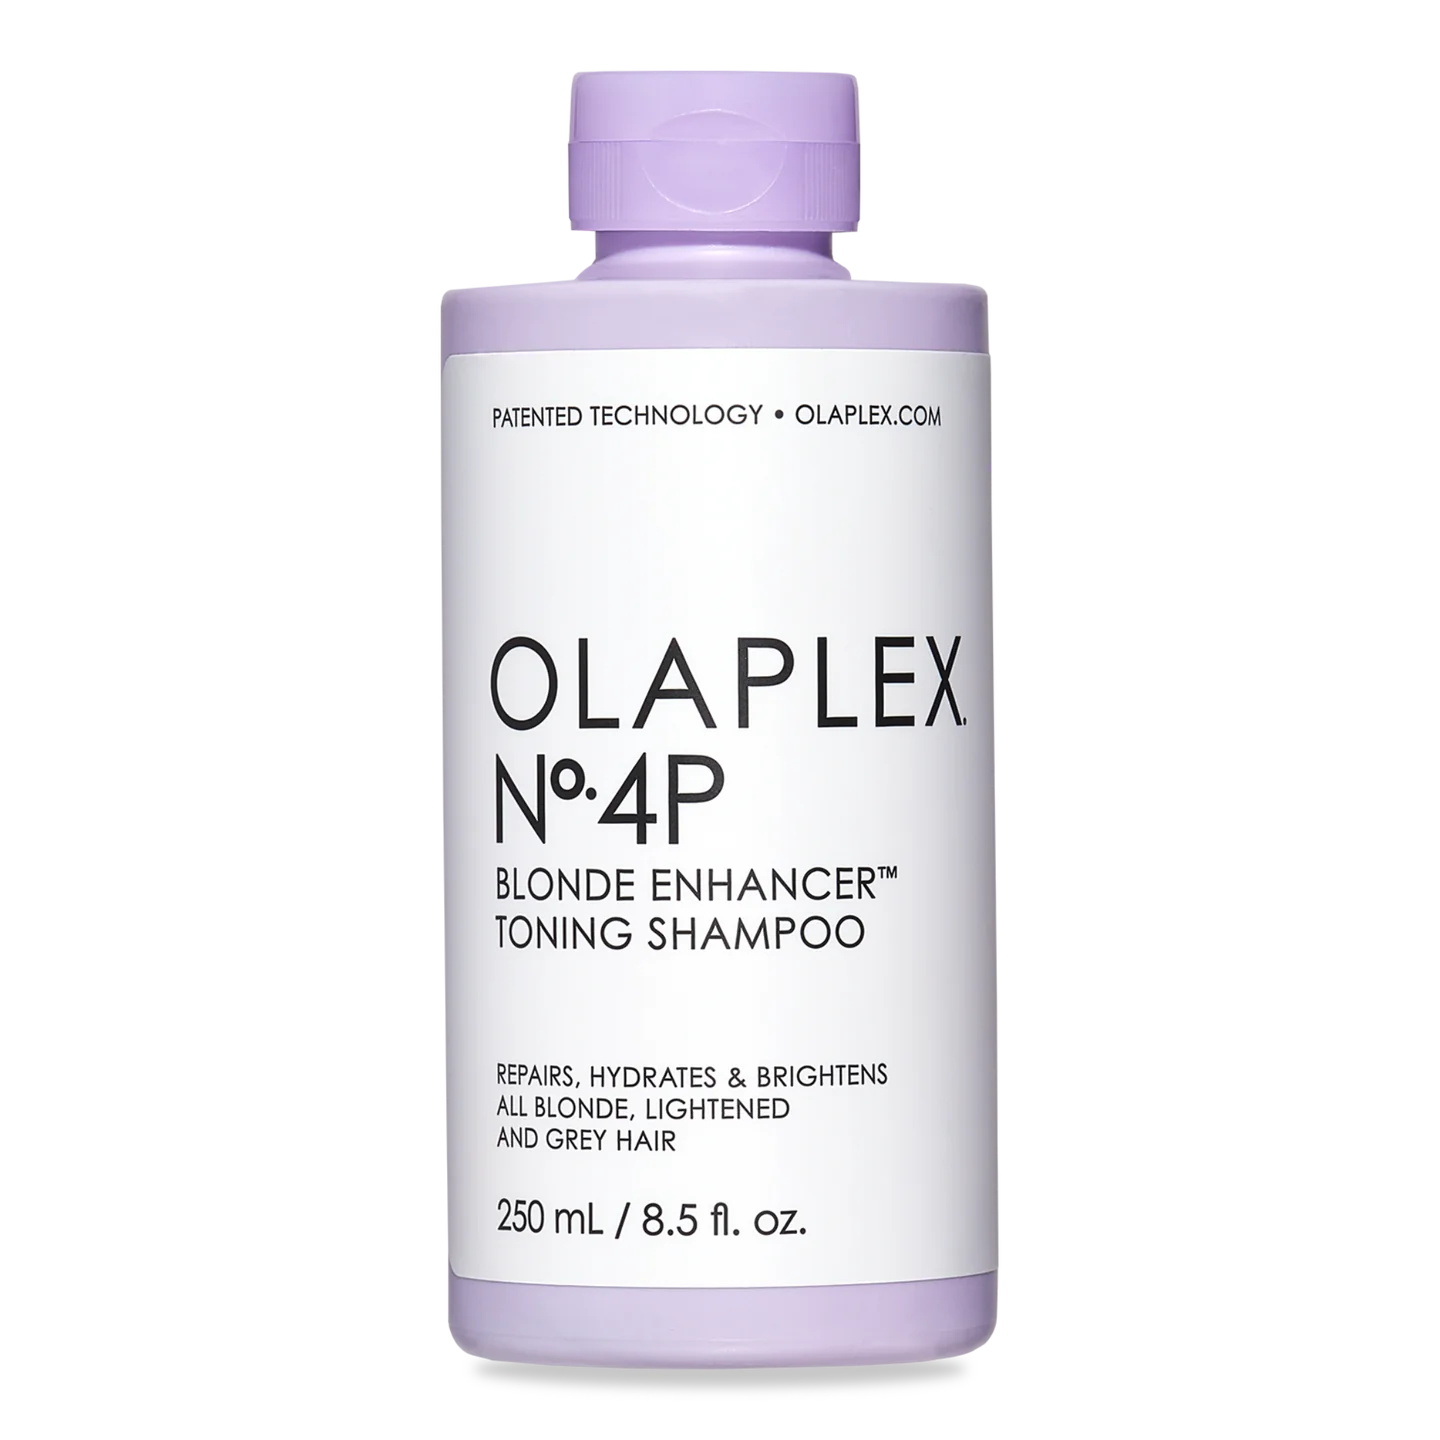 OLAPLEX No.4P